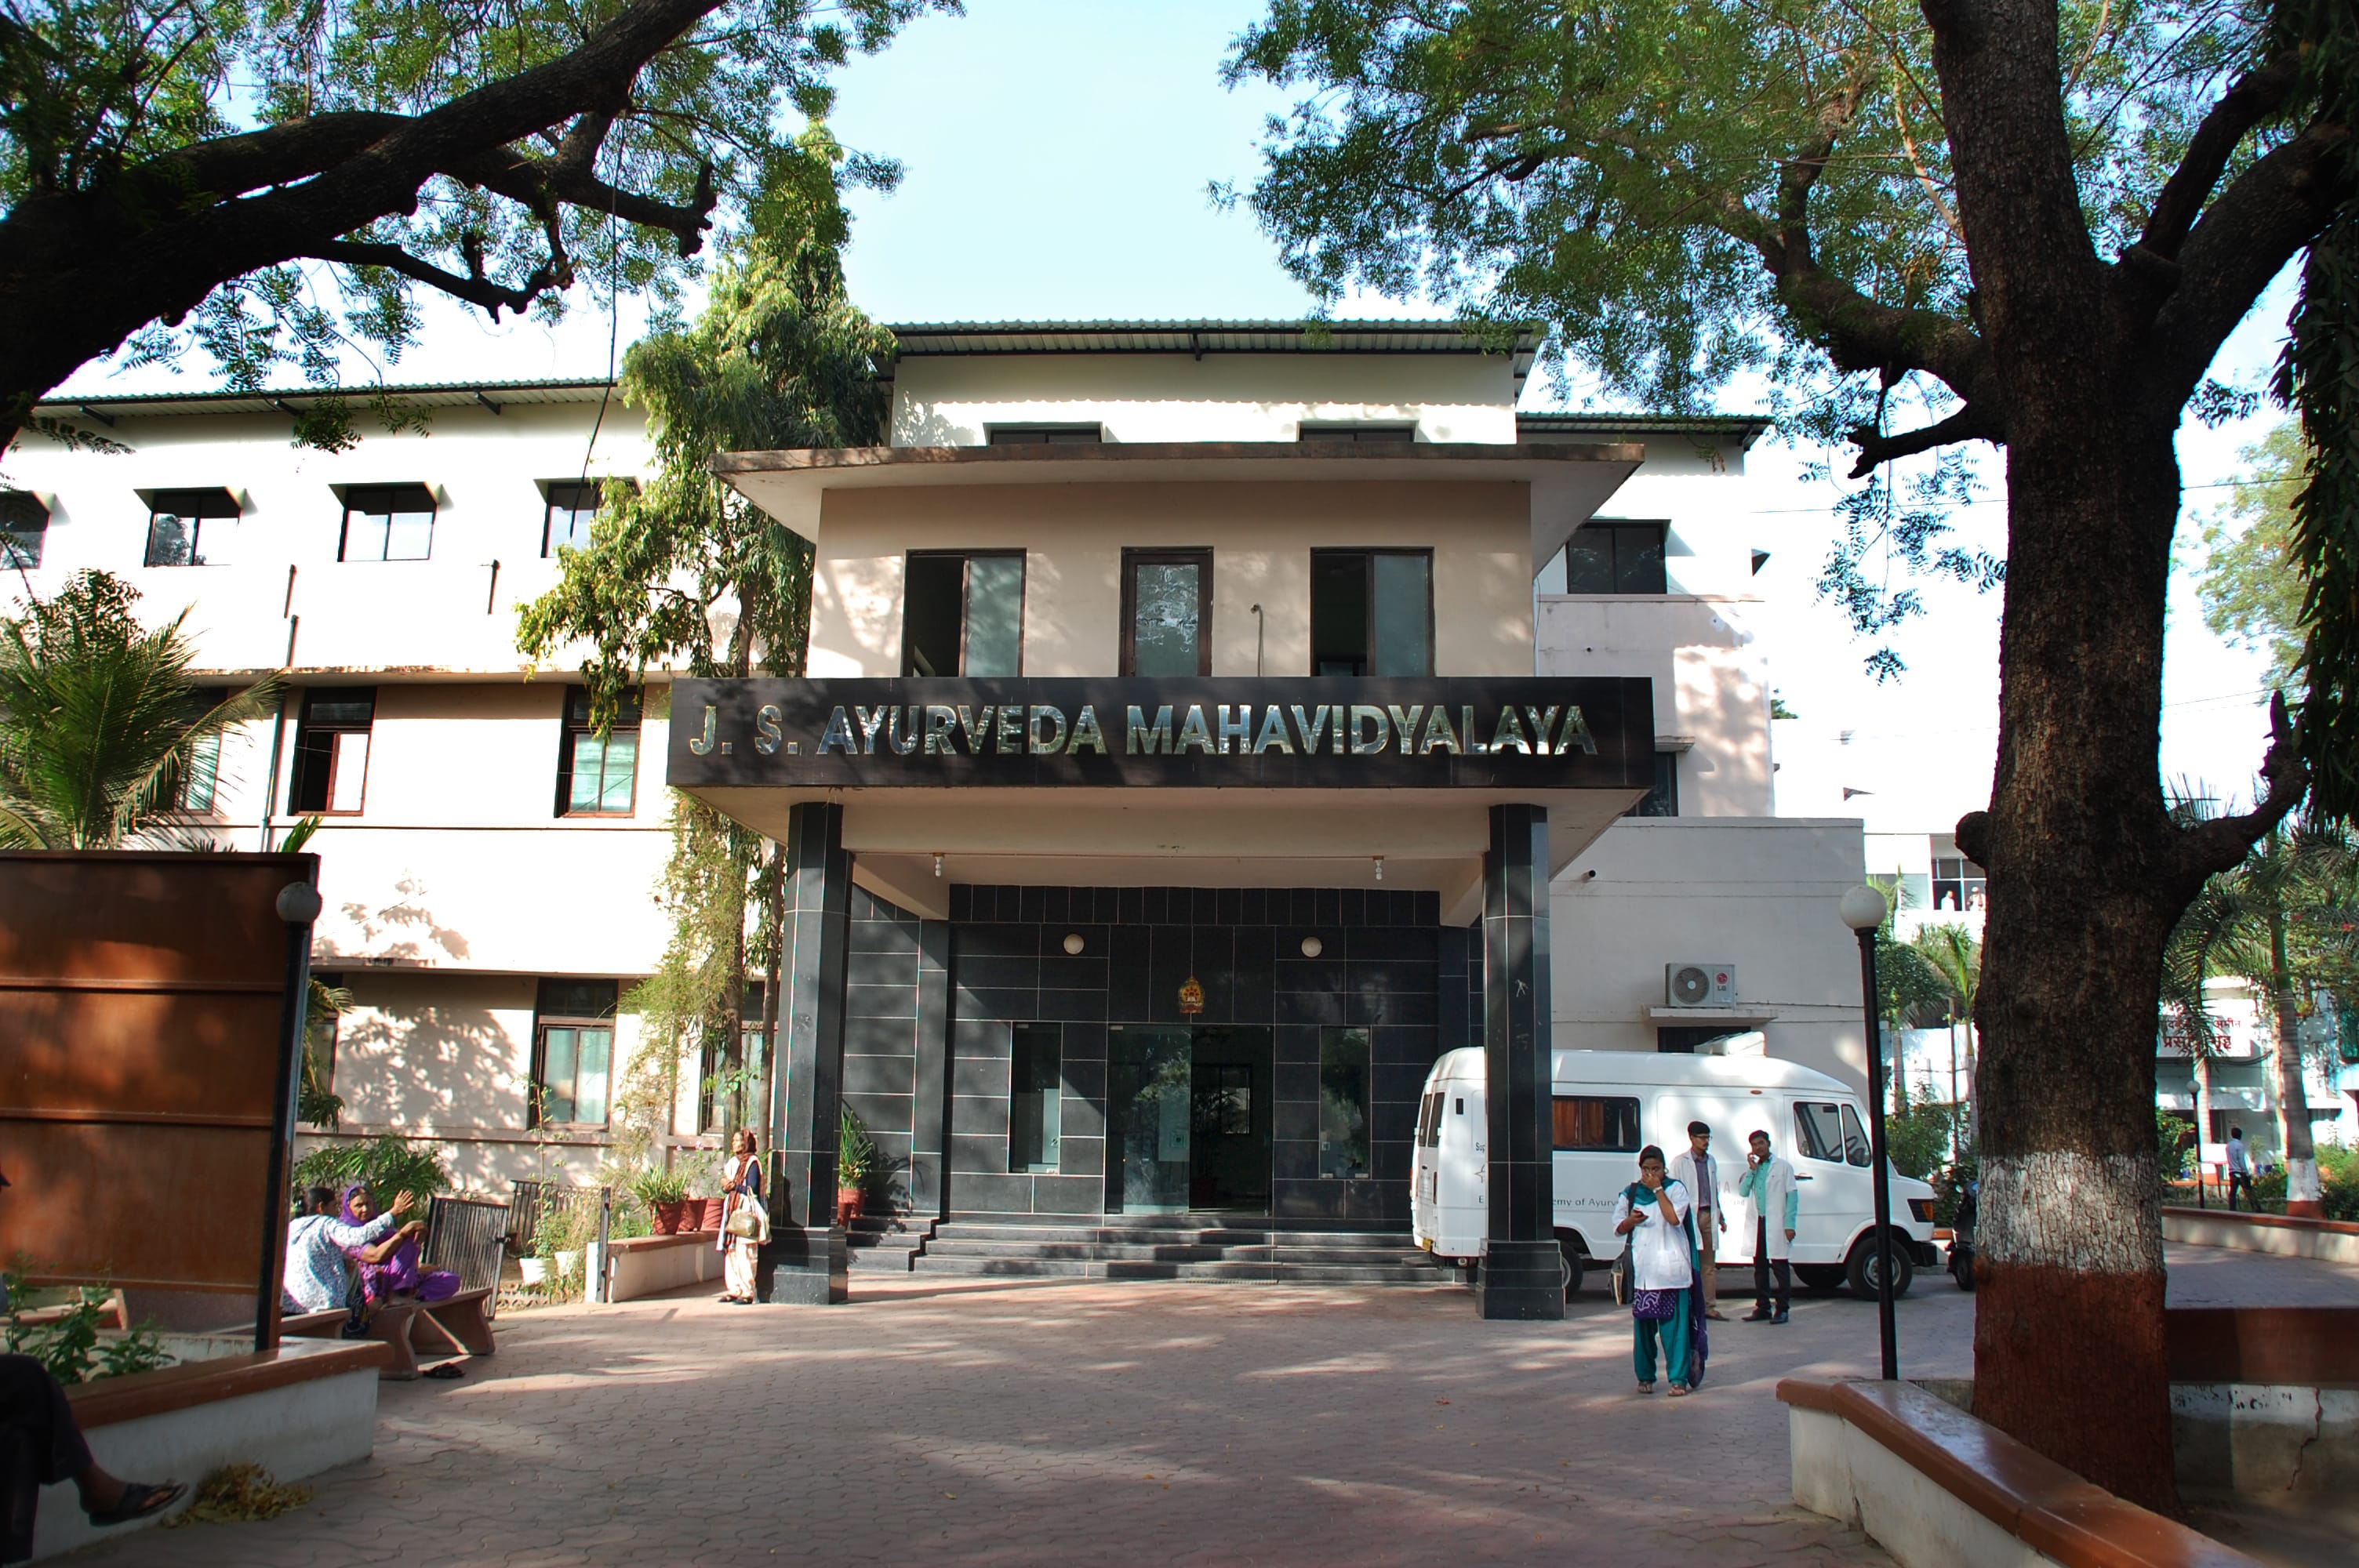 J S Ayurved Mahavidyalay